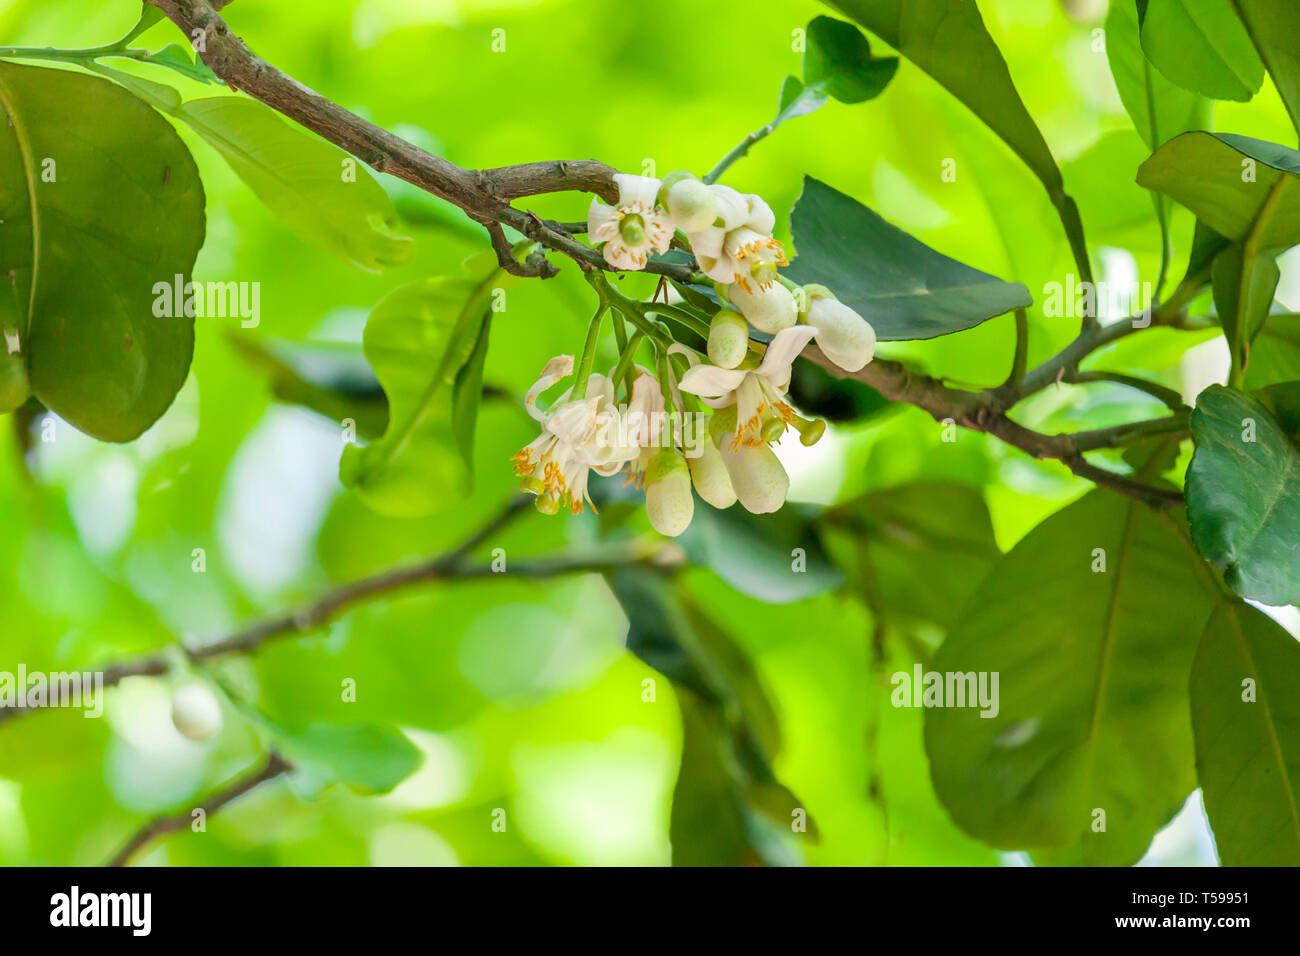 Fiore Di Pompelmo Immagini e Fotos Stock - Alamy